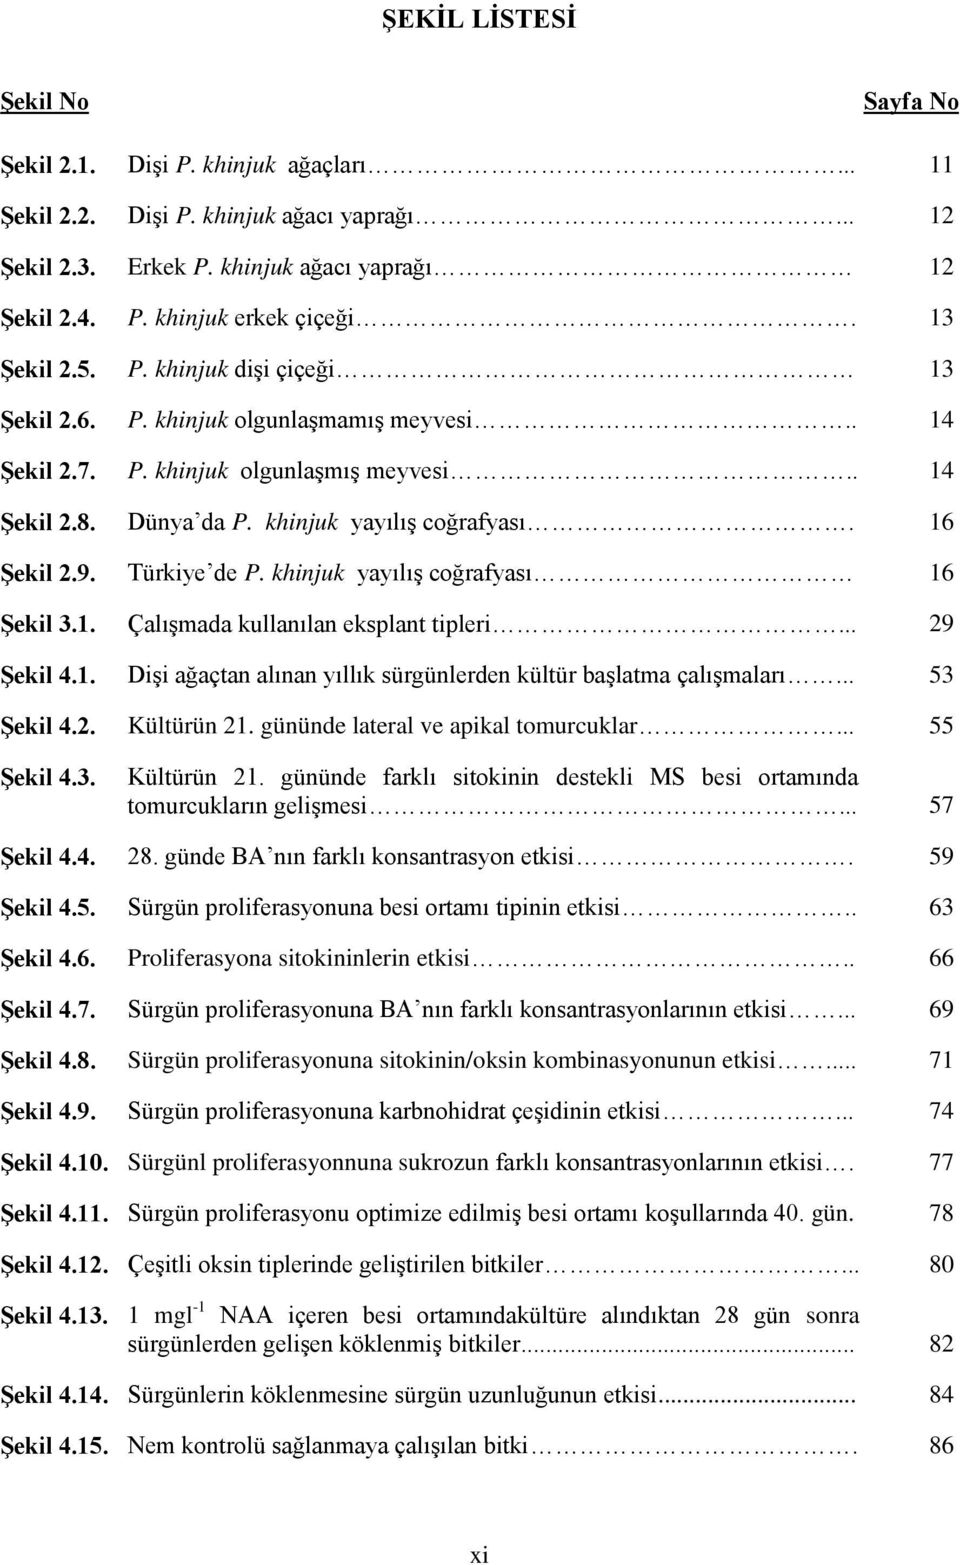 Türkiye de P. khinjuk yayılış coğrafyası 16 Şekil 3.1. Çalışmada kullanılan eksplant tipleri... 29 Şekil 4.1. Dişi ağaçtan alınan yıllık sürgünlerden kültür başlatma çalışmaları... 53 Şekil 4.2. Kültürün 21.